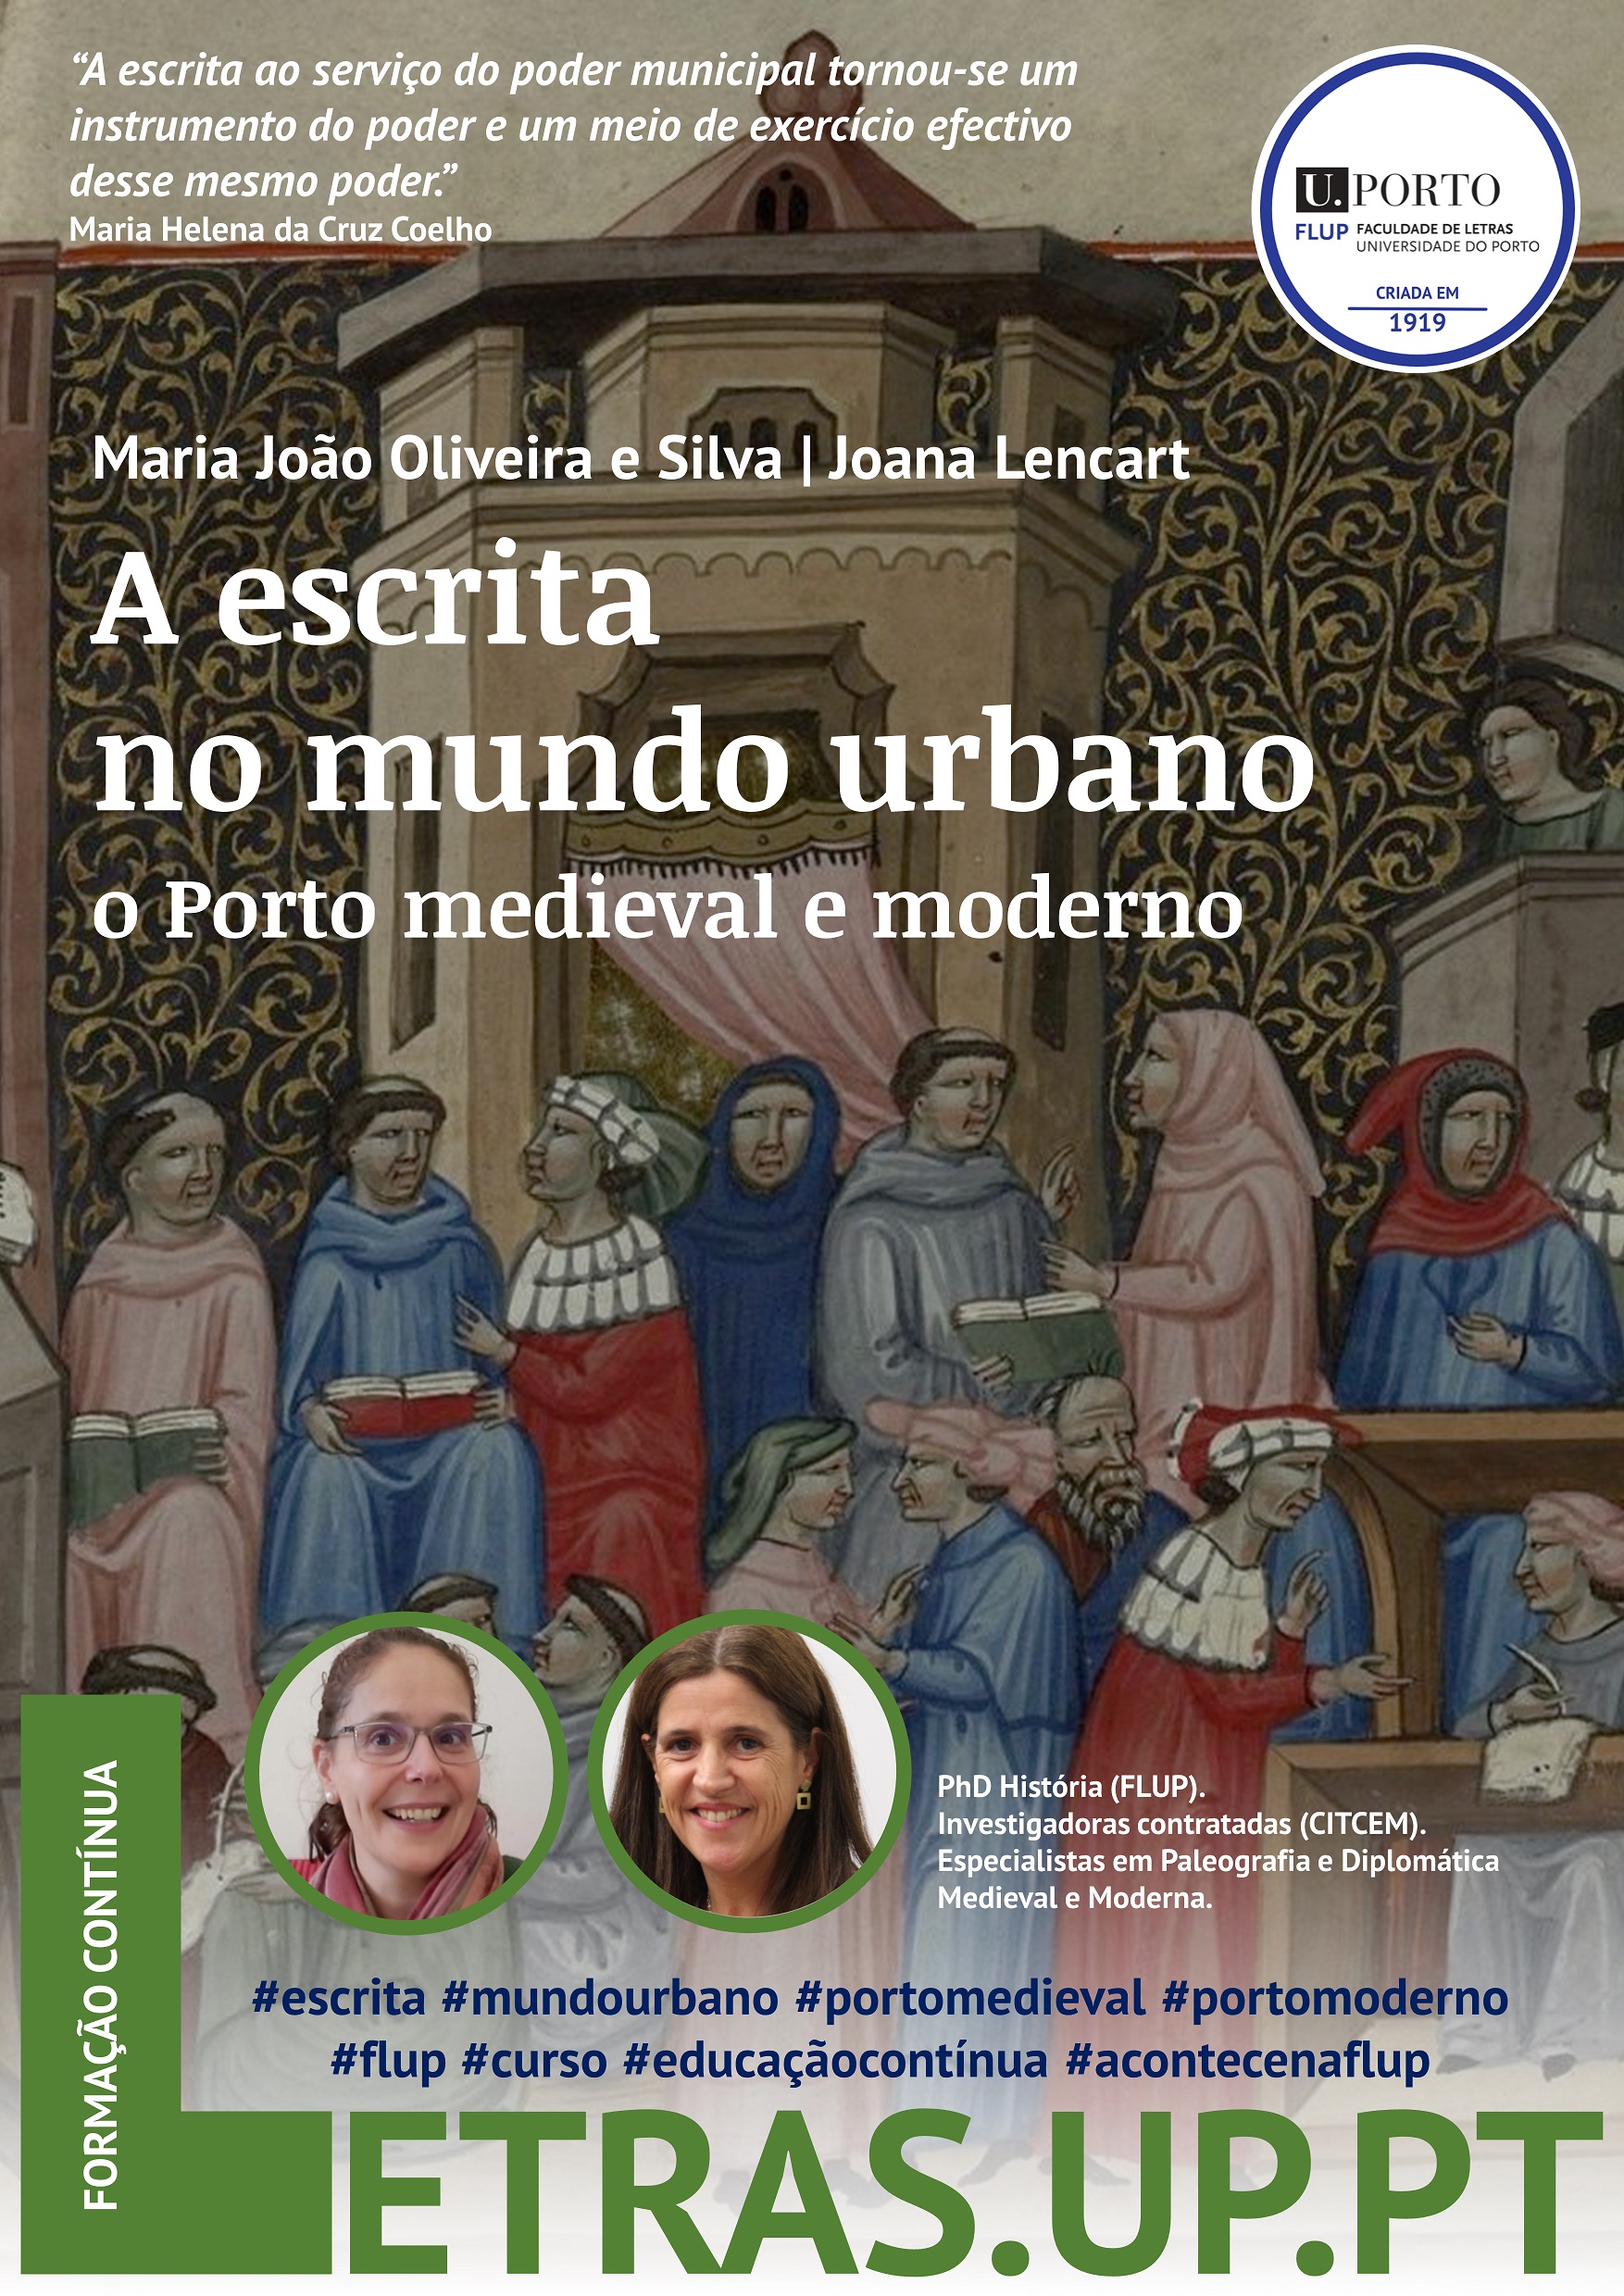 A escrita no mundo urbano: o Porto medieval e moderno